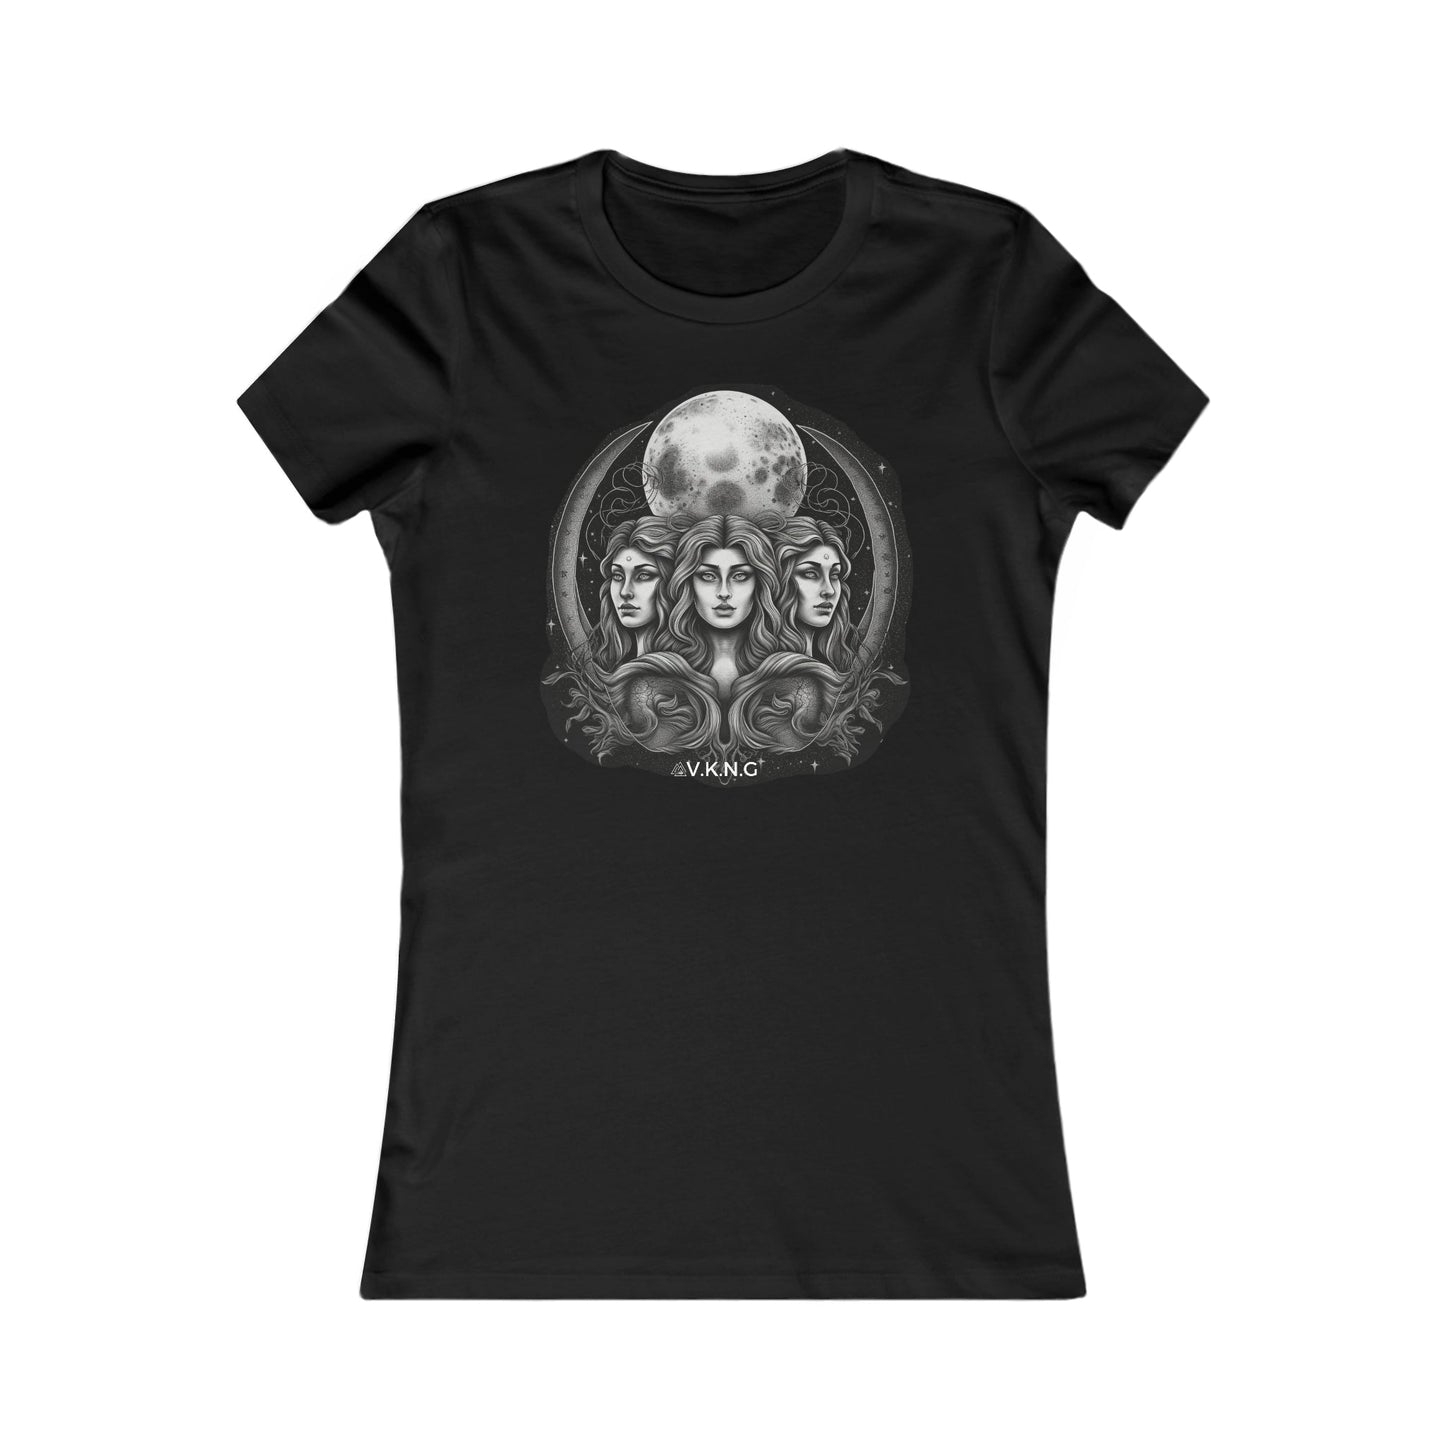 Printify T-Shirt Design V4  V.K.N.G™  Girly Cut